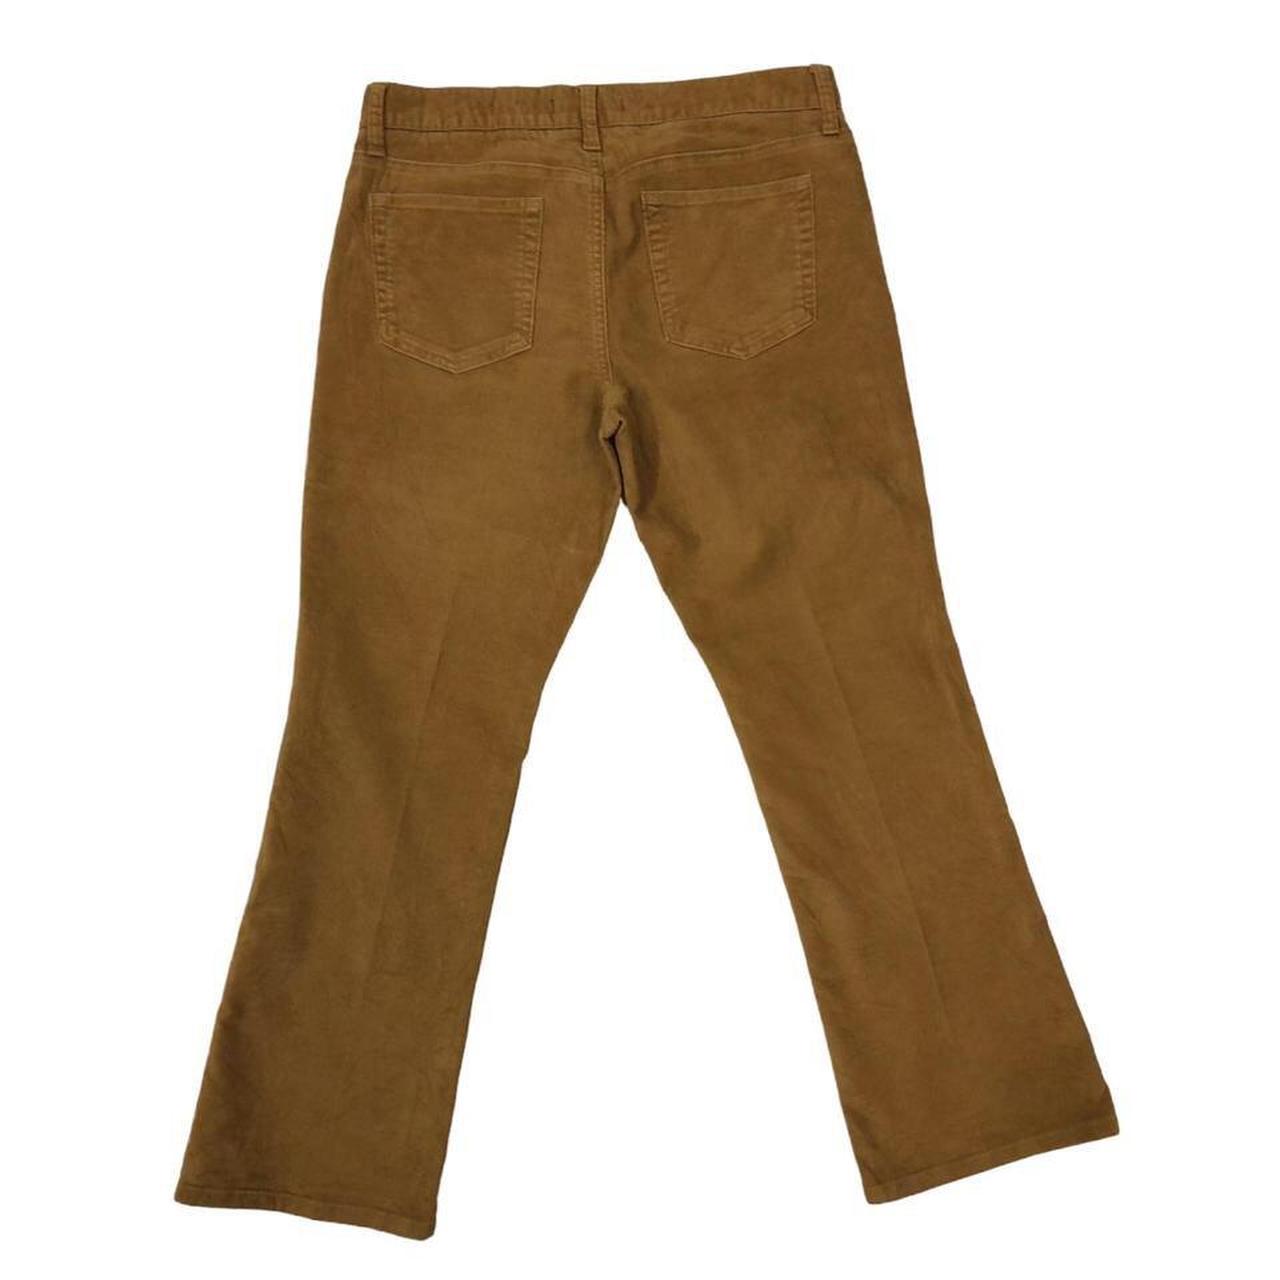 GAP 1969 Corduroy Jeans Brown Slim Bootcut Fit Men's... - Depop